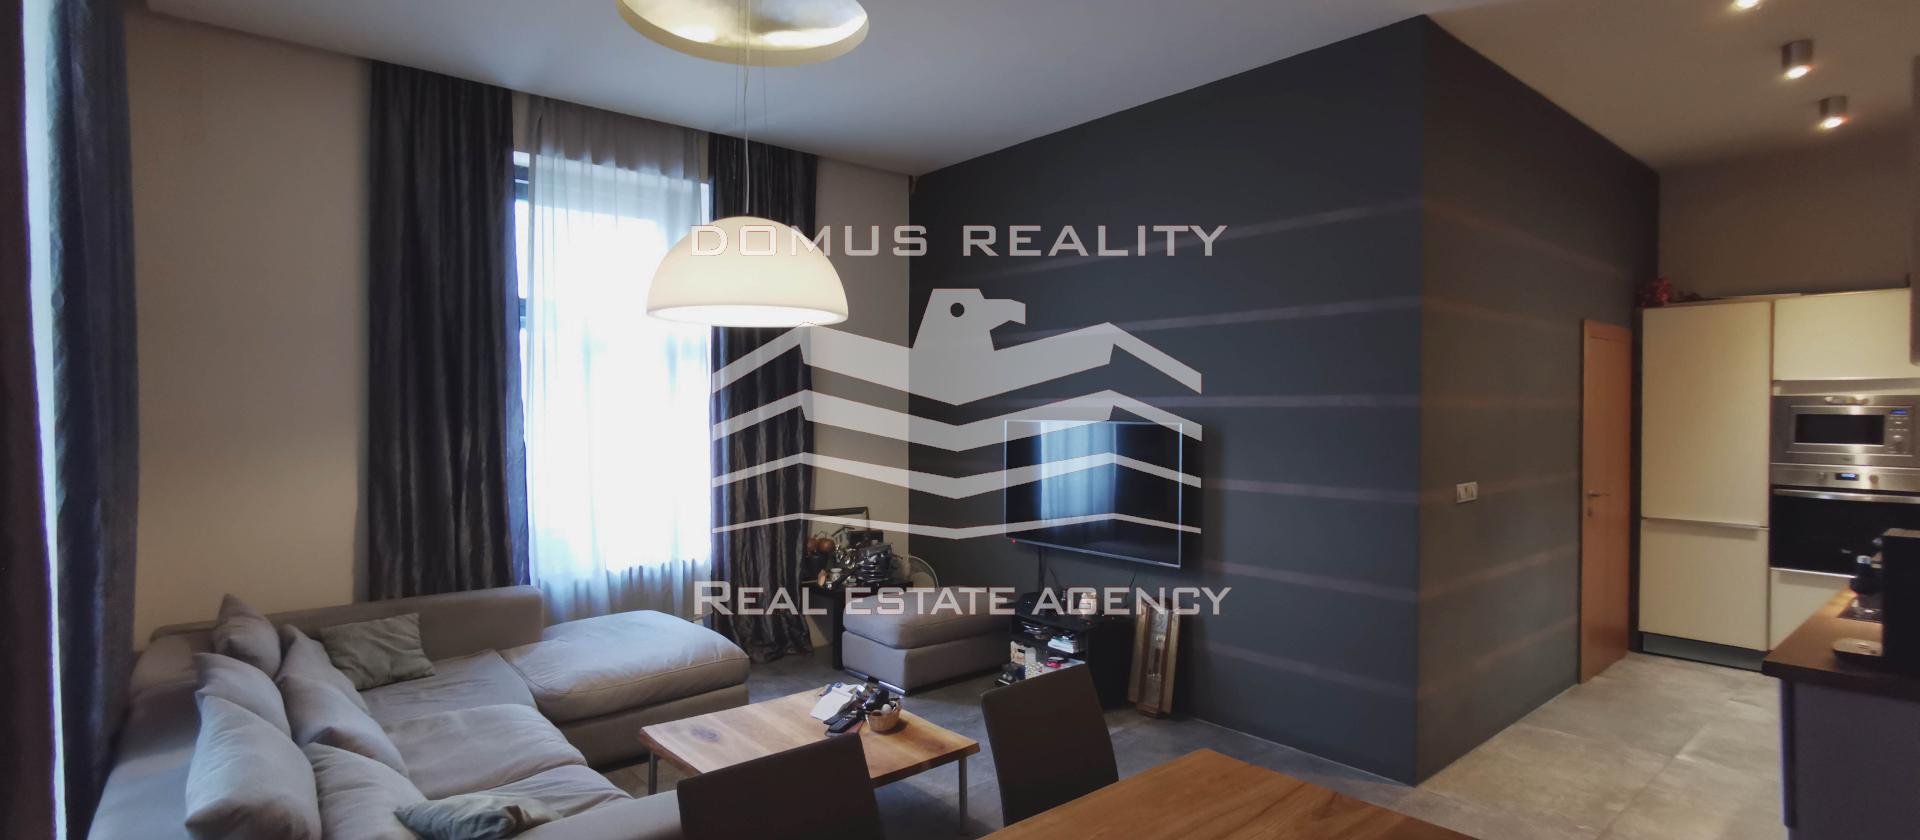 Společnost Domus Reality v exkluzivním zastoupení majitele nabízí k prodeji kompletně zrekonstruovaná byt 3+kk s celkovou plochou 63 m2.